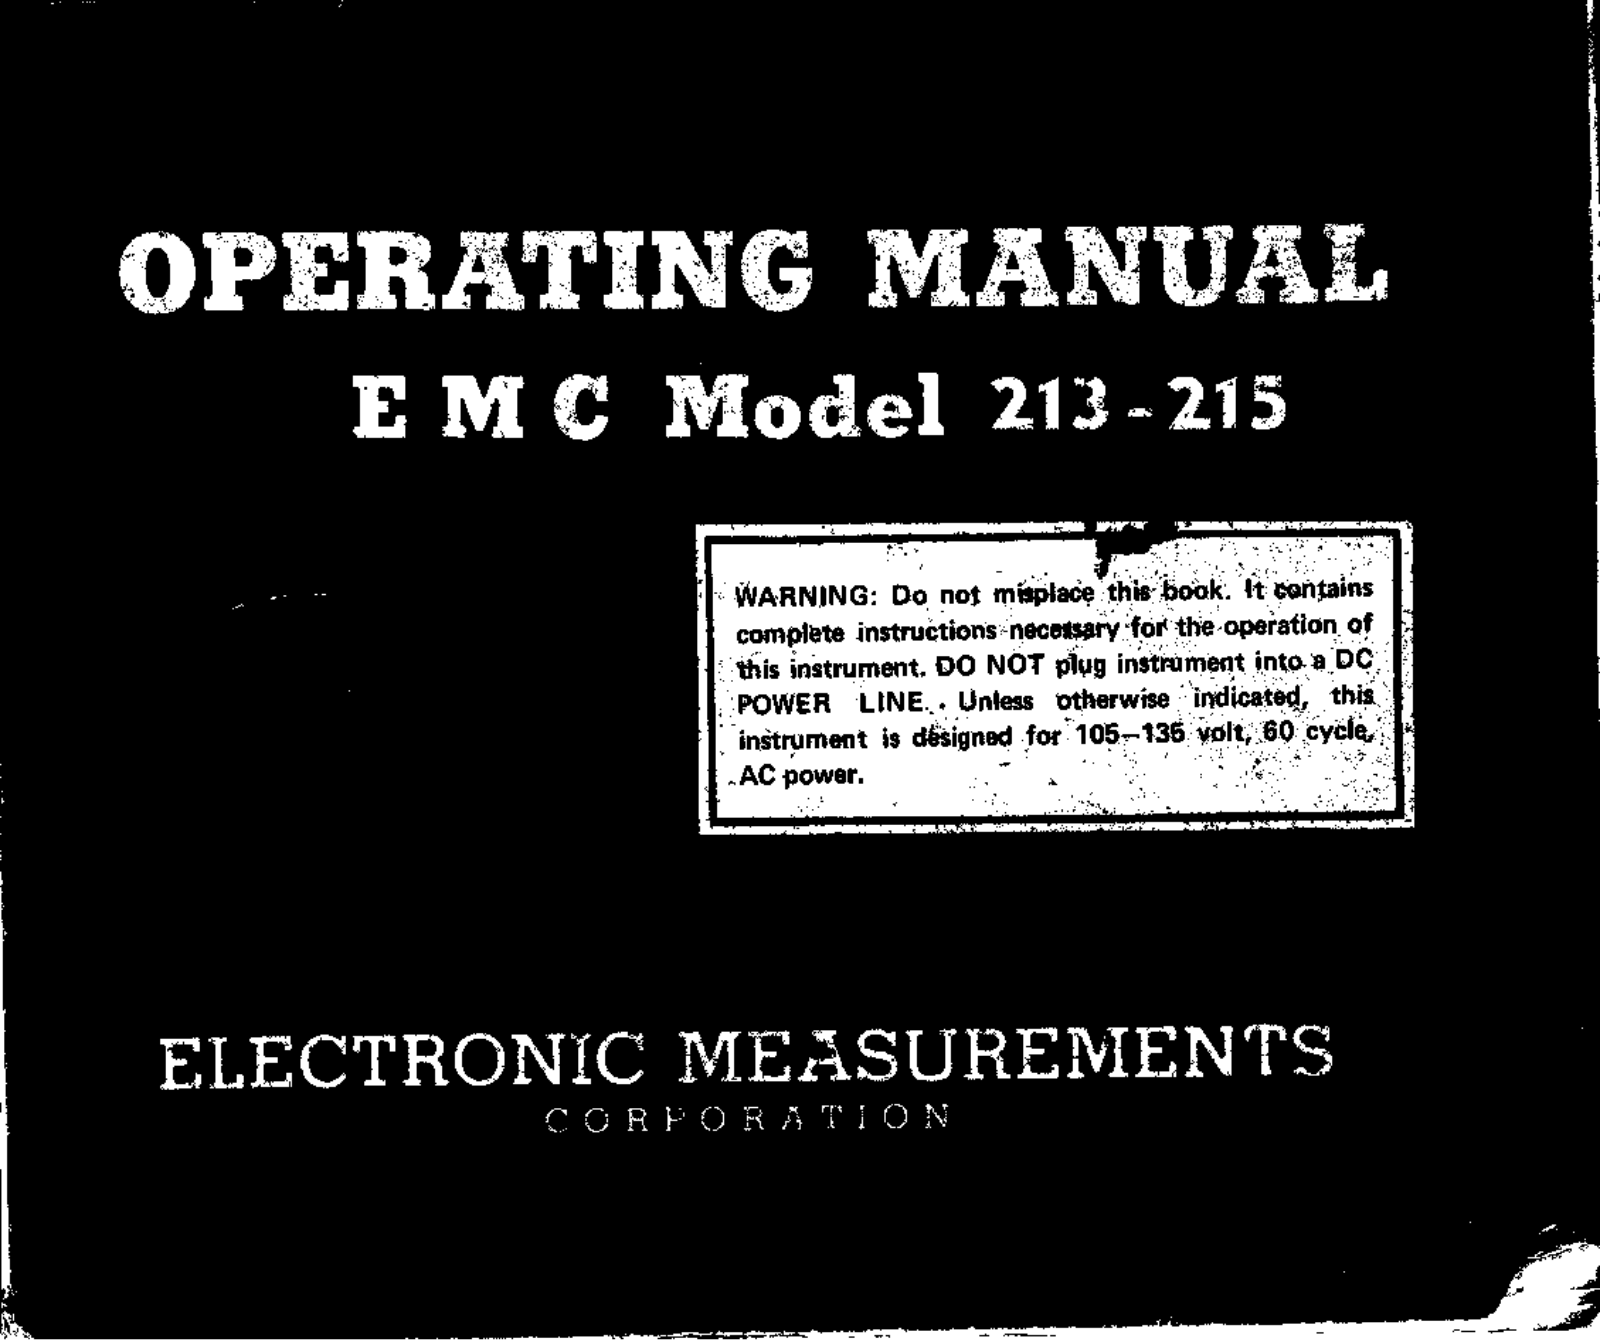 EMC 213, 215 User Manual